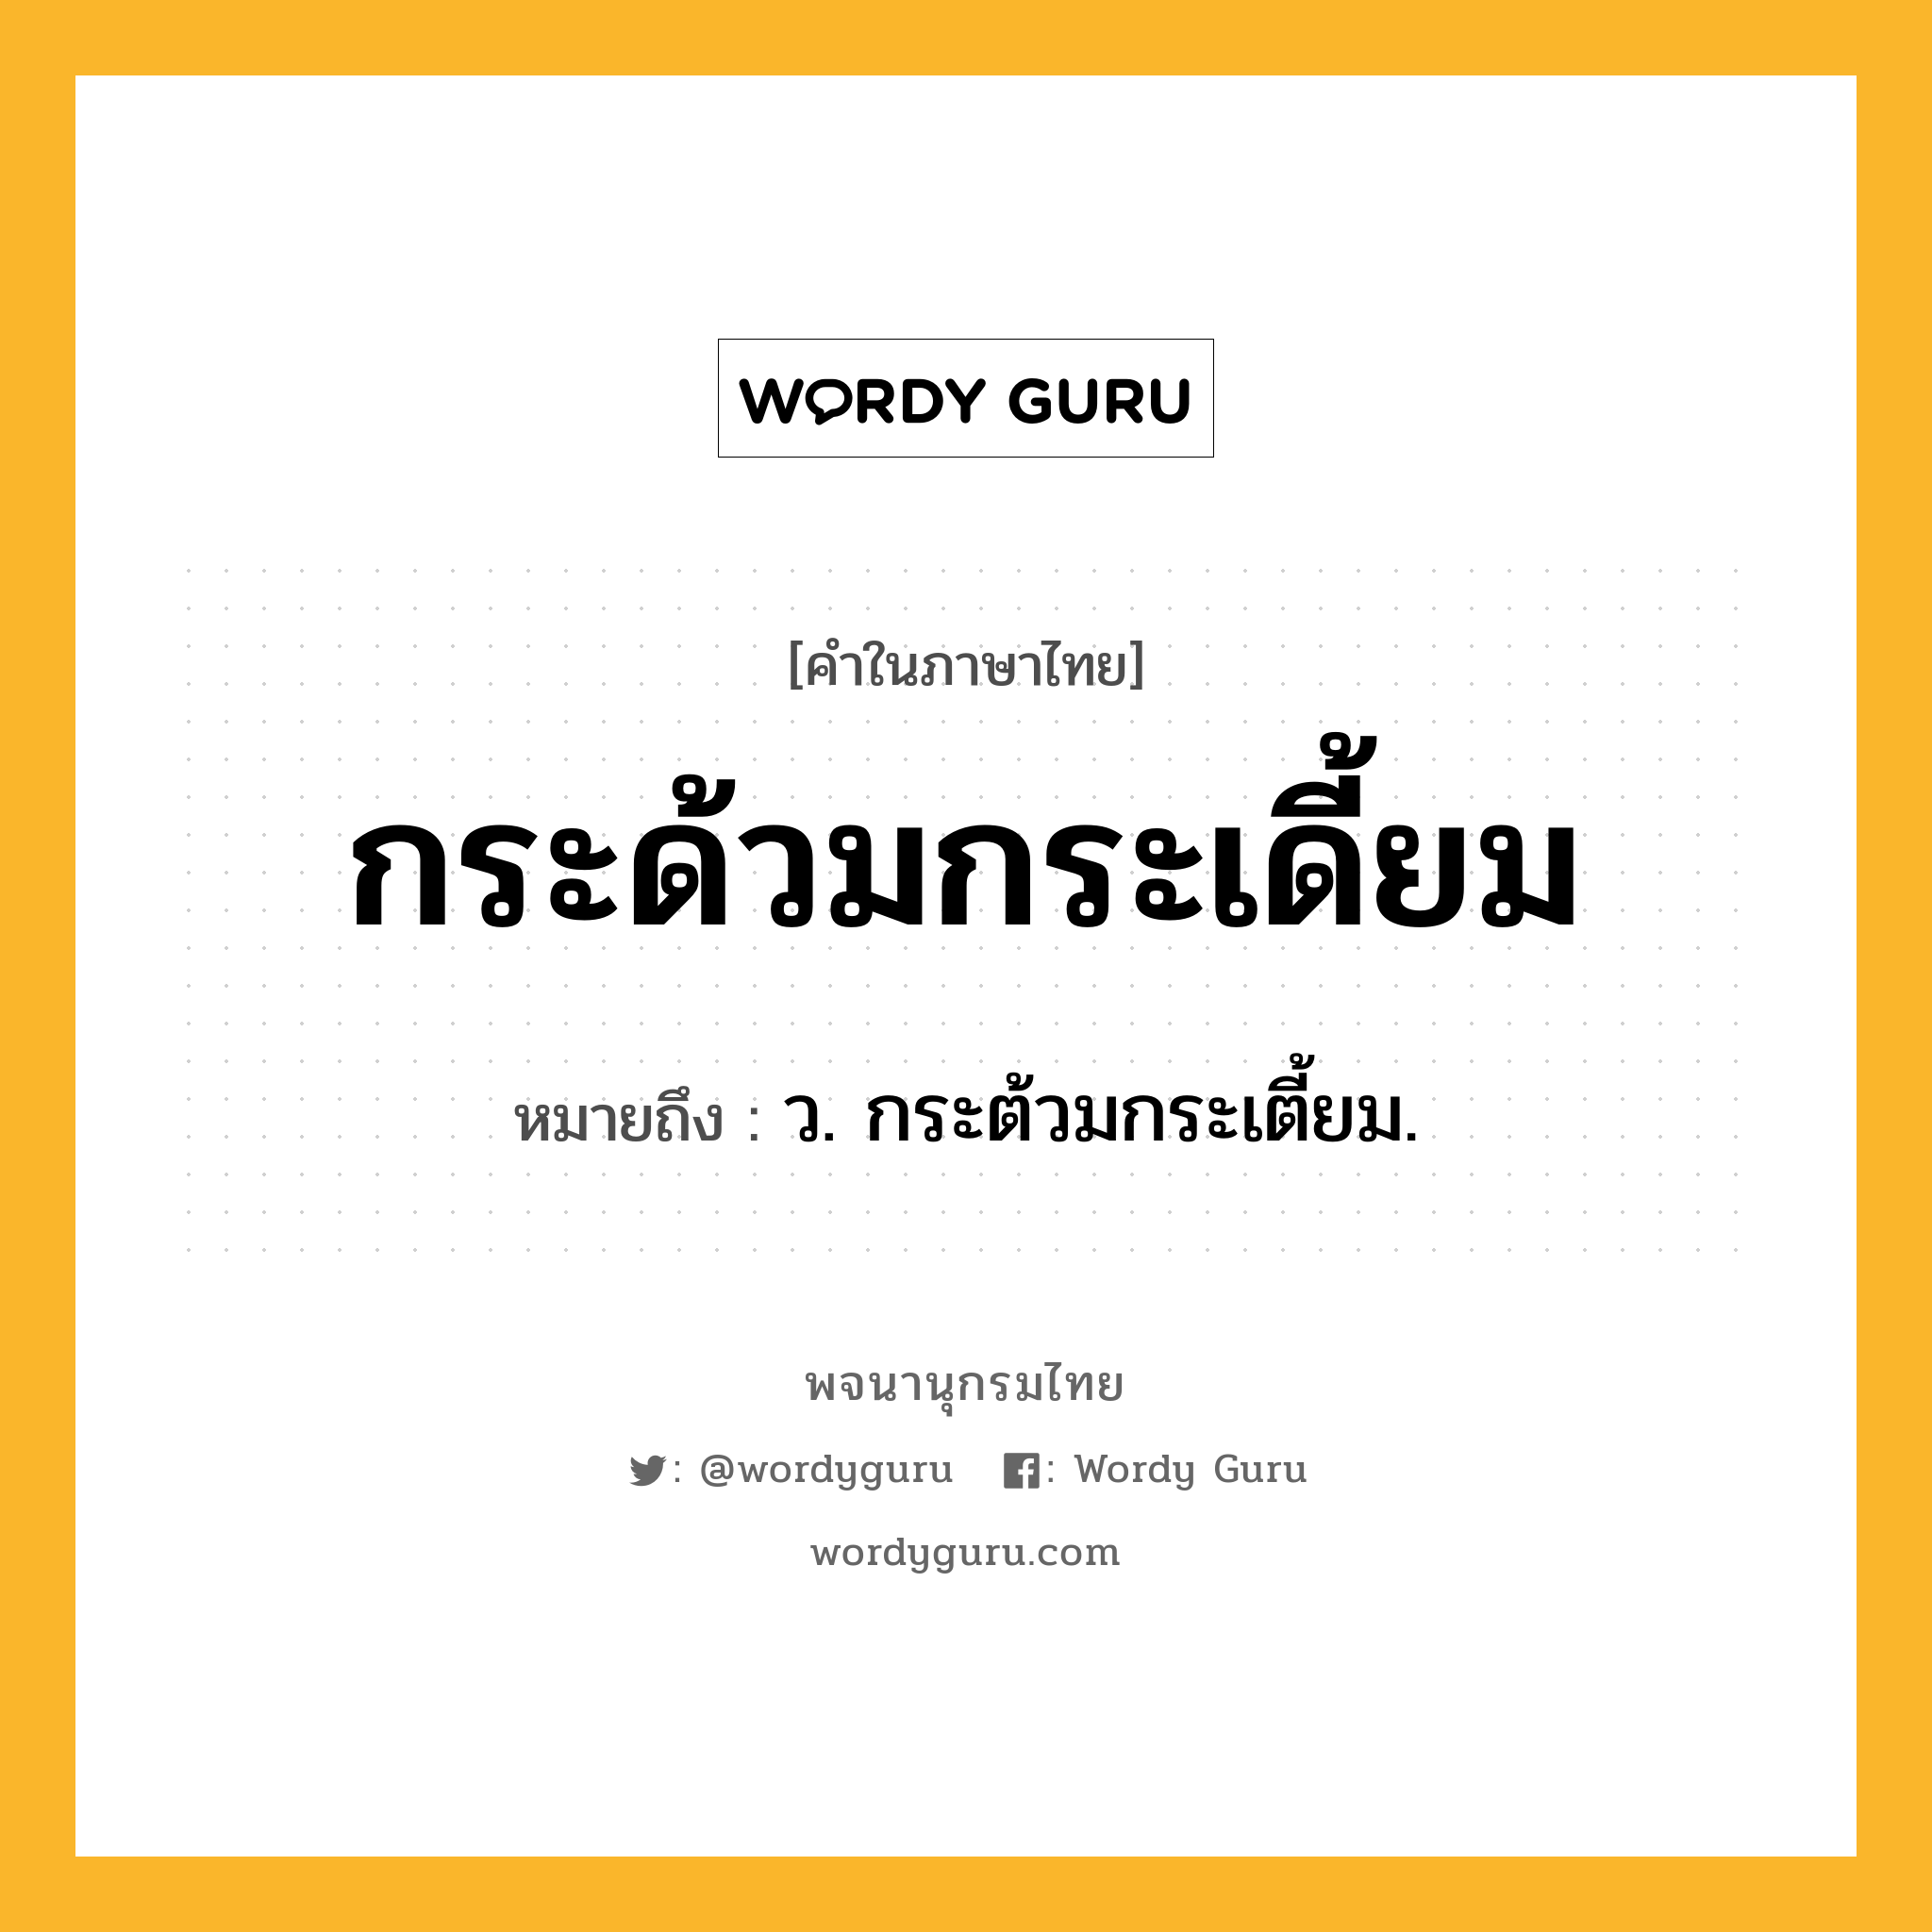 กระด้วมกระเดี้ยม หมายถึงอะไร?, คำในภาษาไทย กระด้วมกระเดี้ยม หมายถึง ว. กระต้วมกระเตี้ยม.